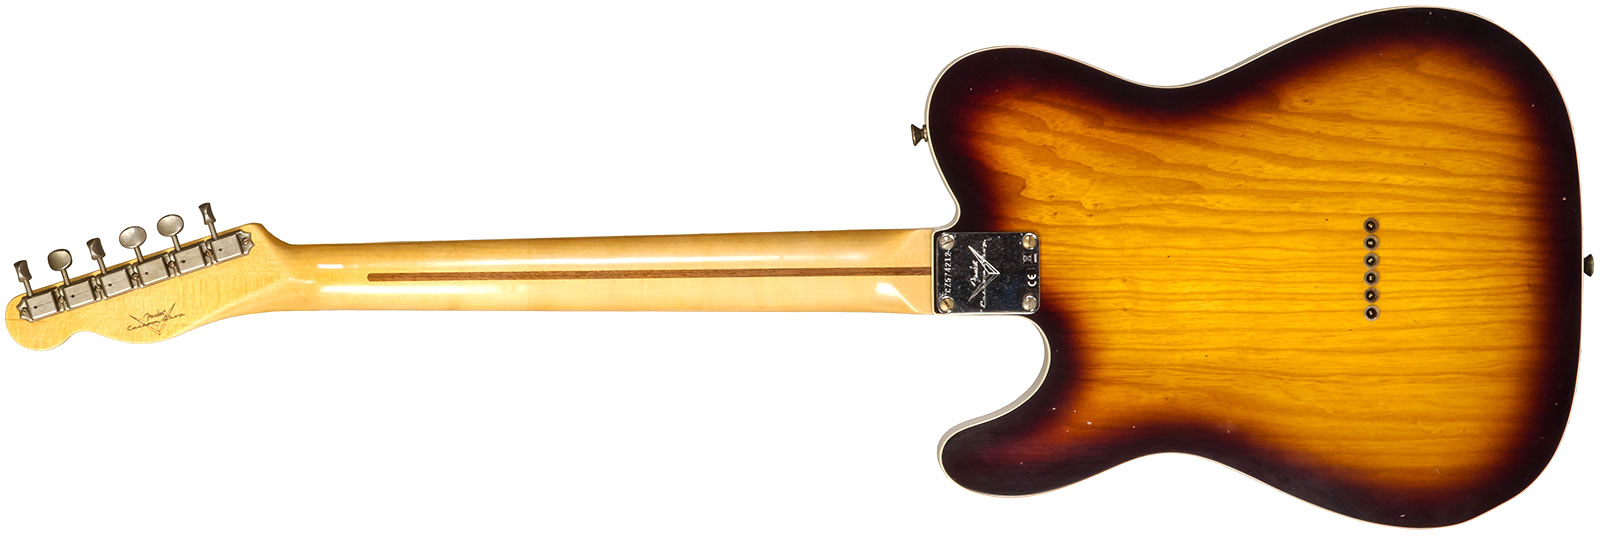 Fender Custom Shop Tele Thinline 50s Mn #cz574212 - Journeyman Relic Aged 2-color Sunburst - Guitarra eléctrica con forma de tel - Variation 2